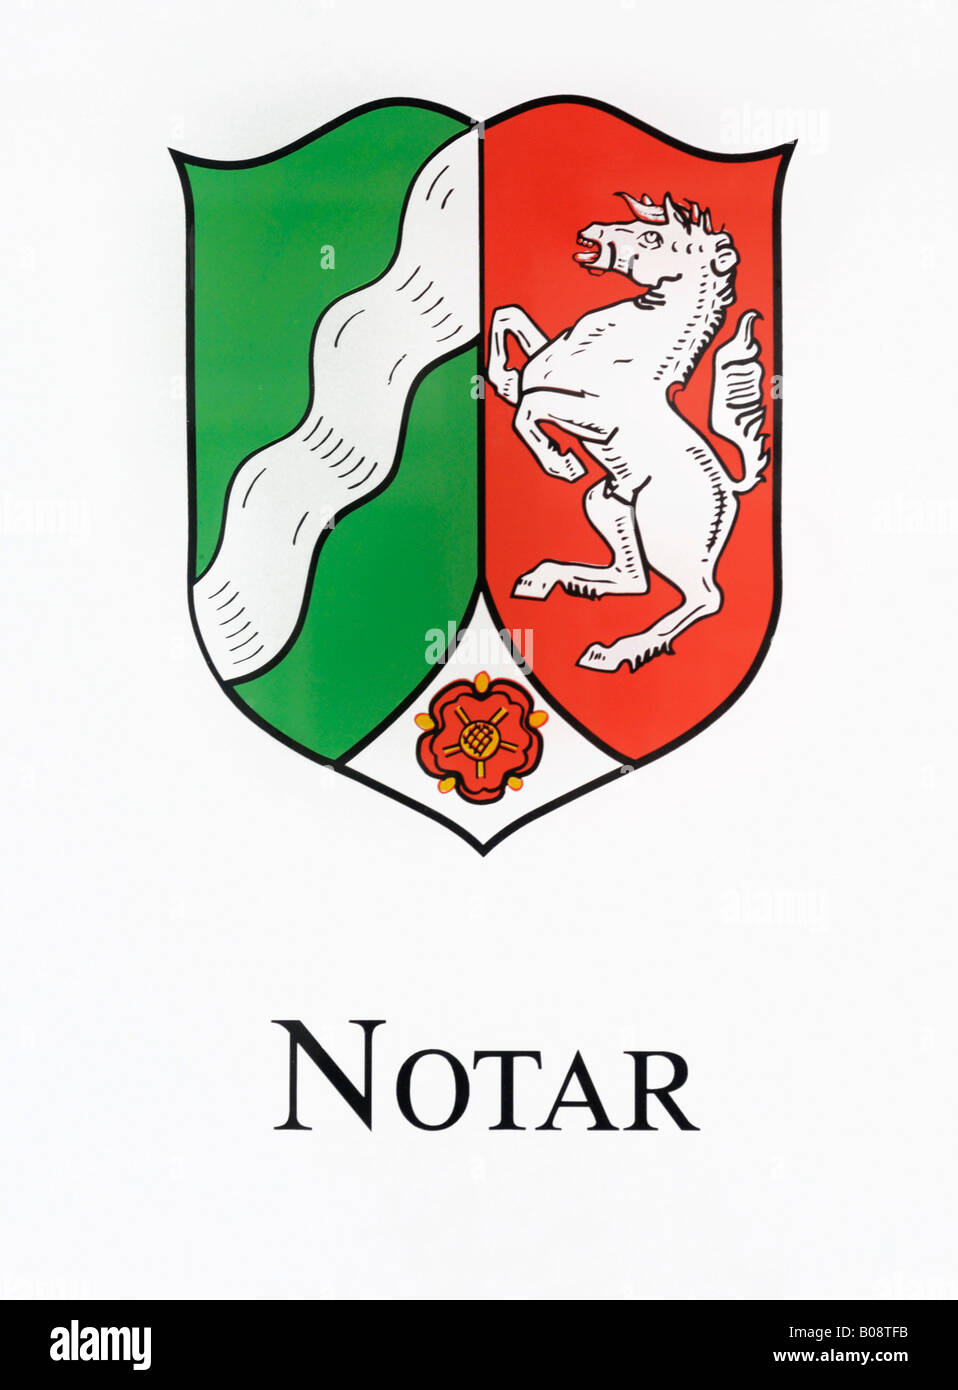 Firmar por un notario público (Notar) con el escudo de armas del Estado federado de Renania del Norte-Westfalia Foto de stock